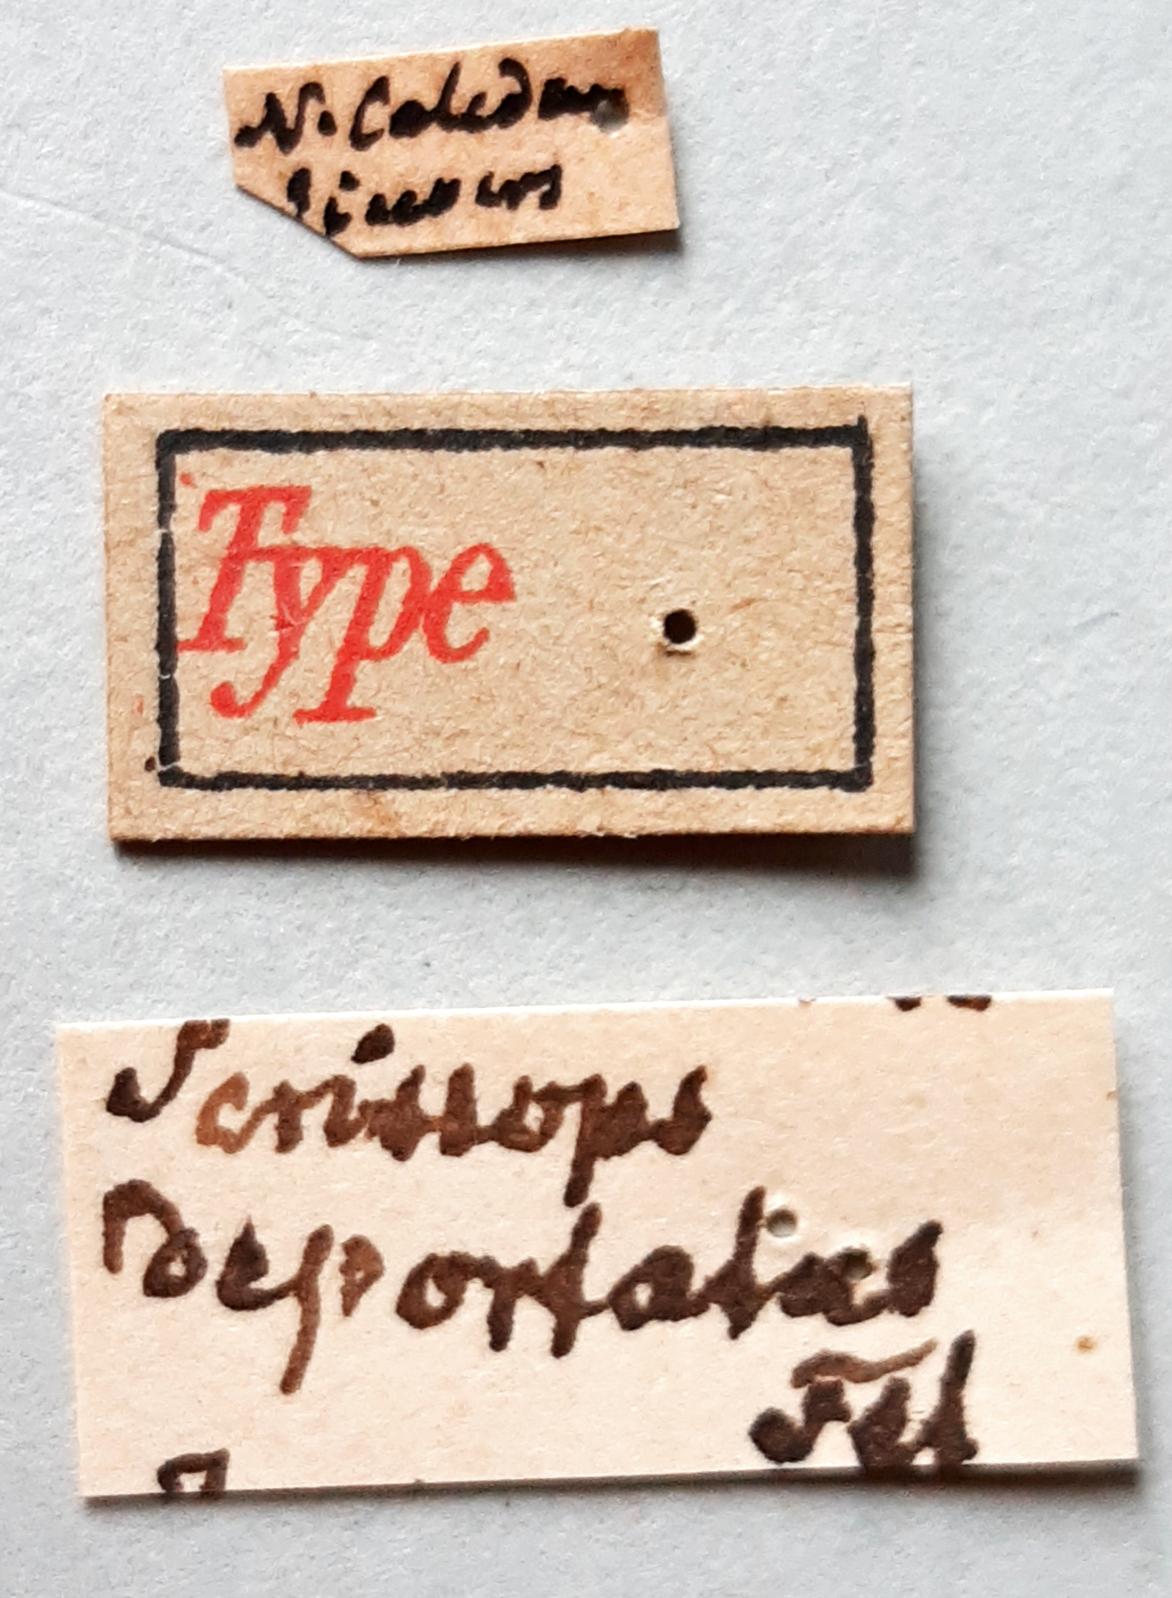 Perissops deportatus t labels